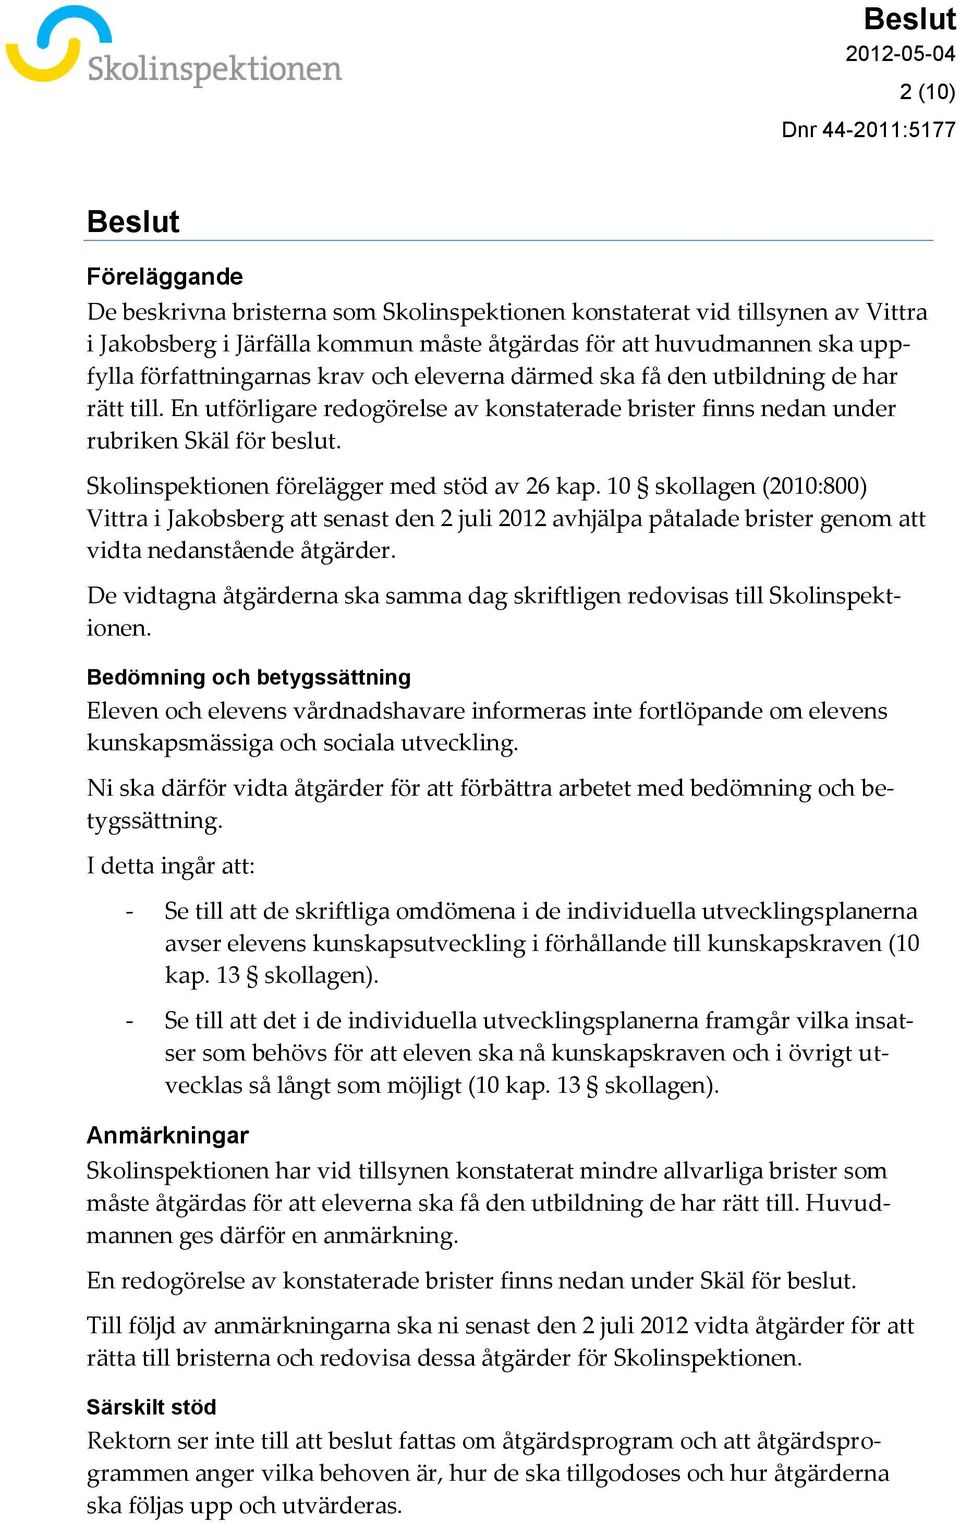 Skolinspektionen förelägger med stöd av 26 kap. 10 skollagen (2010:800) Vittra i Jakobsberg att senast den 2 juli 2012 avhjälpa påtalade brister genom att vidta nedanstående åtgärder.